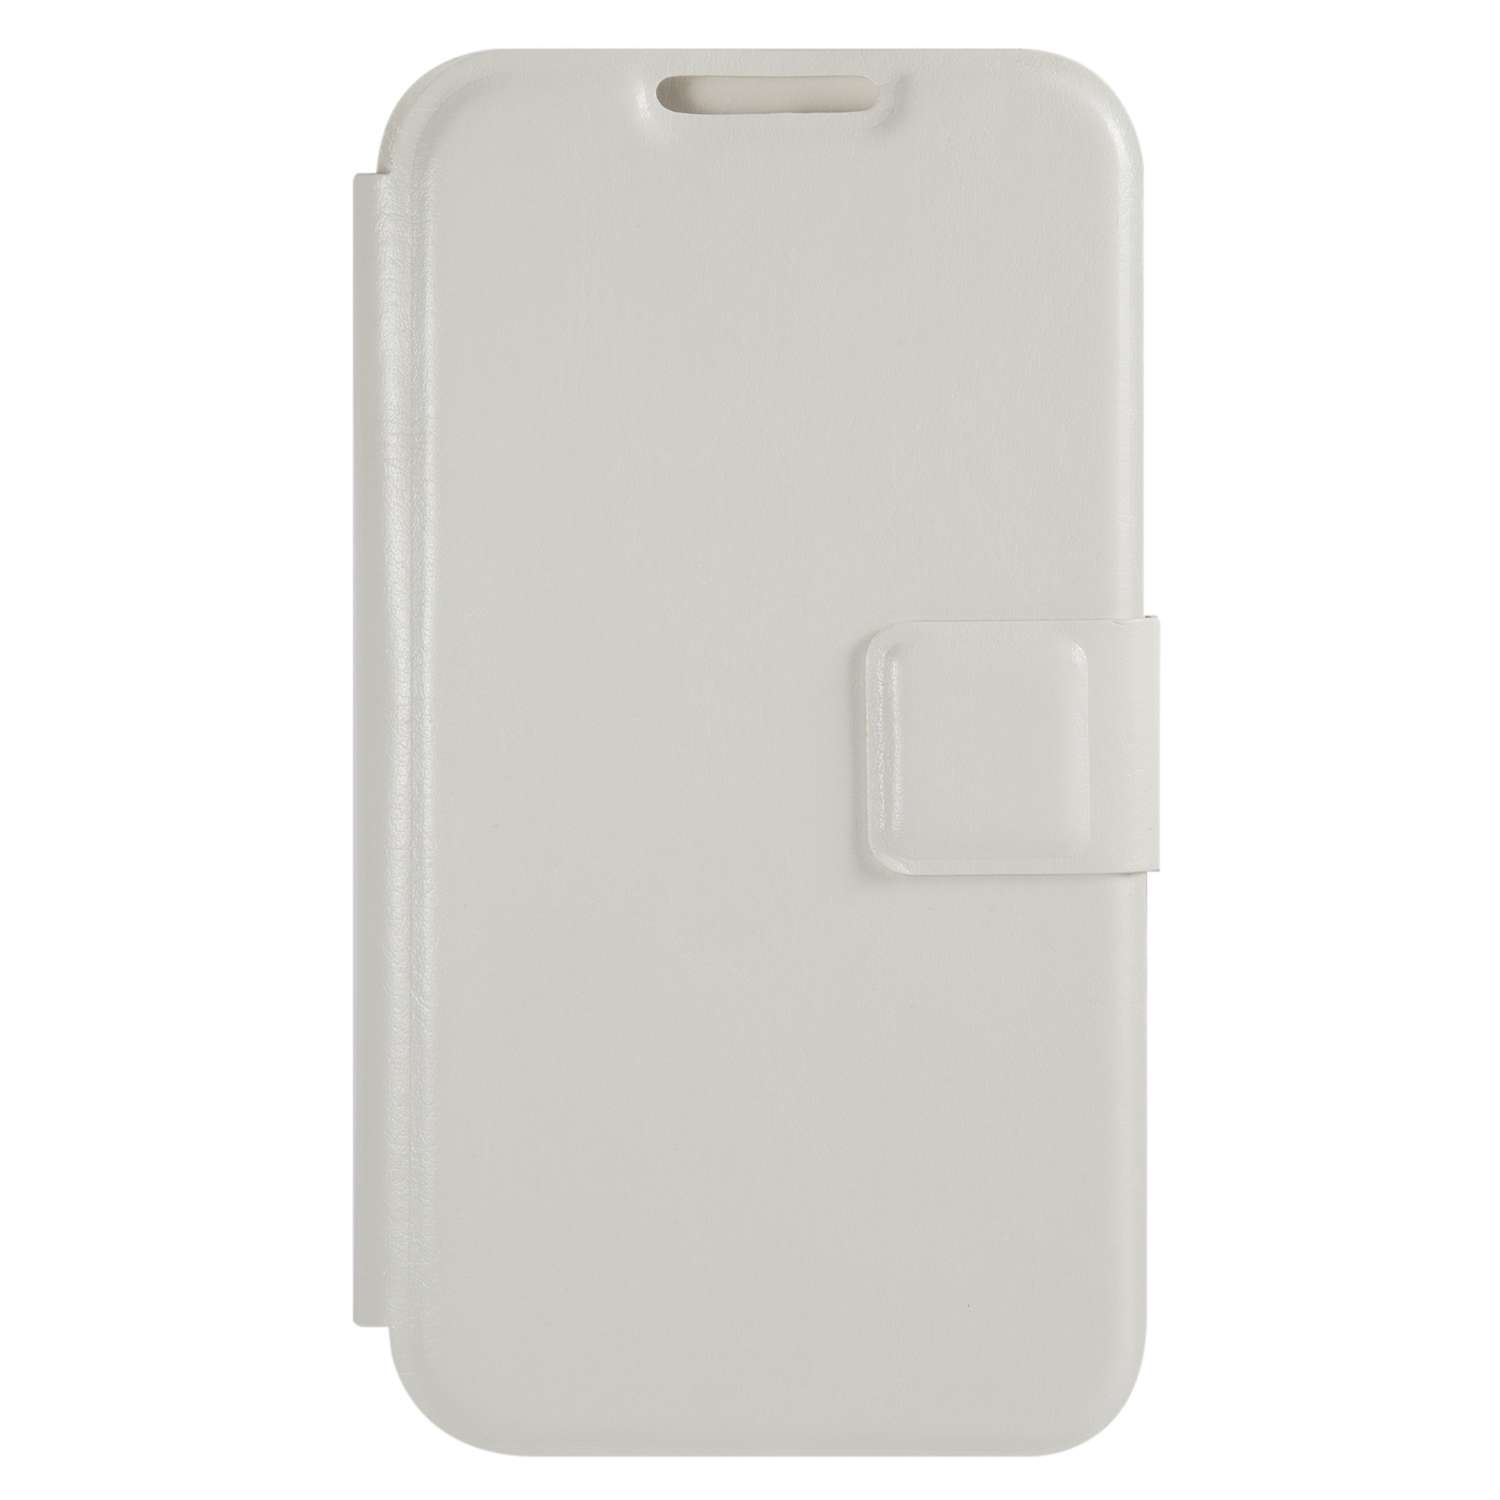 Чехол универсальный iBox Universal для телефонов 4.2-5 дюйма белый - фото 3